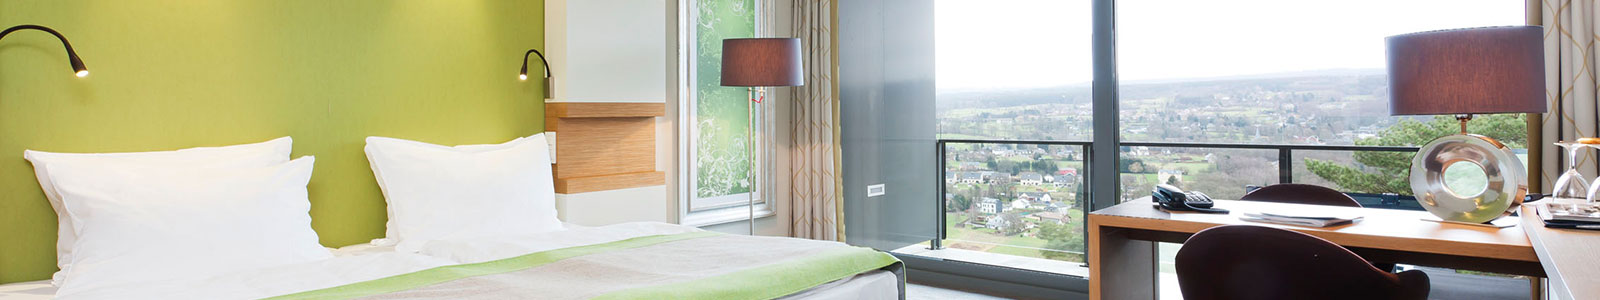 Silva Hotel Spa-Balmoral – Rooms